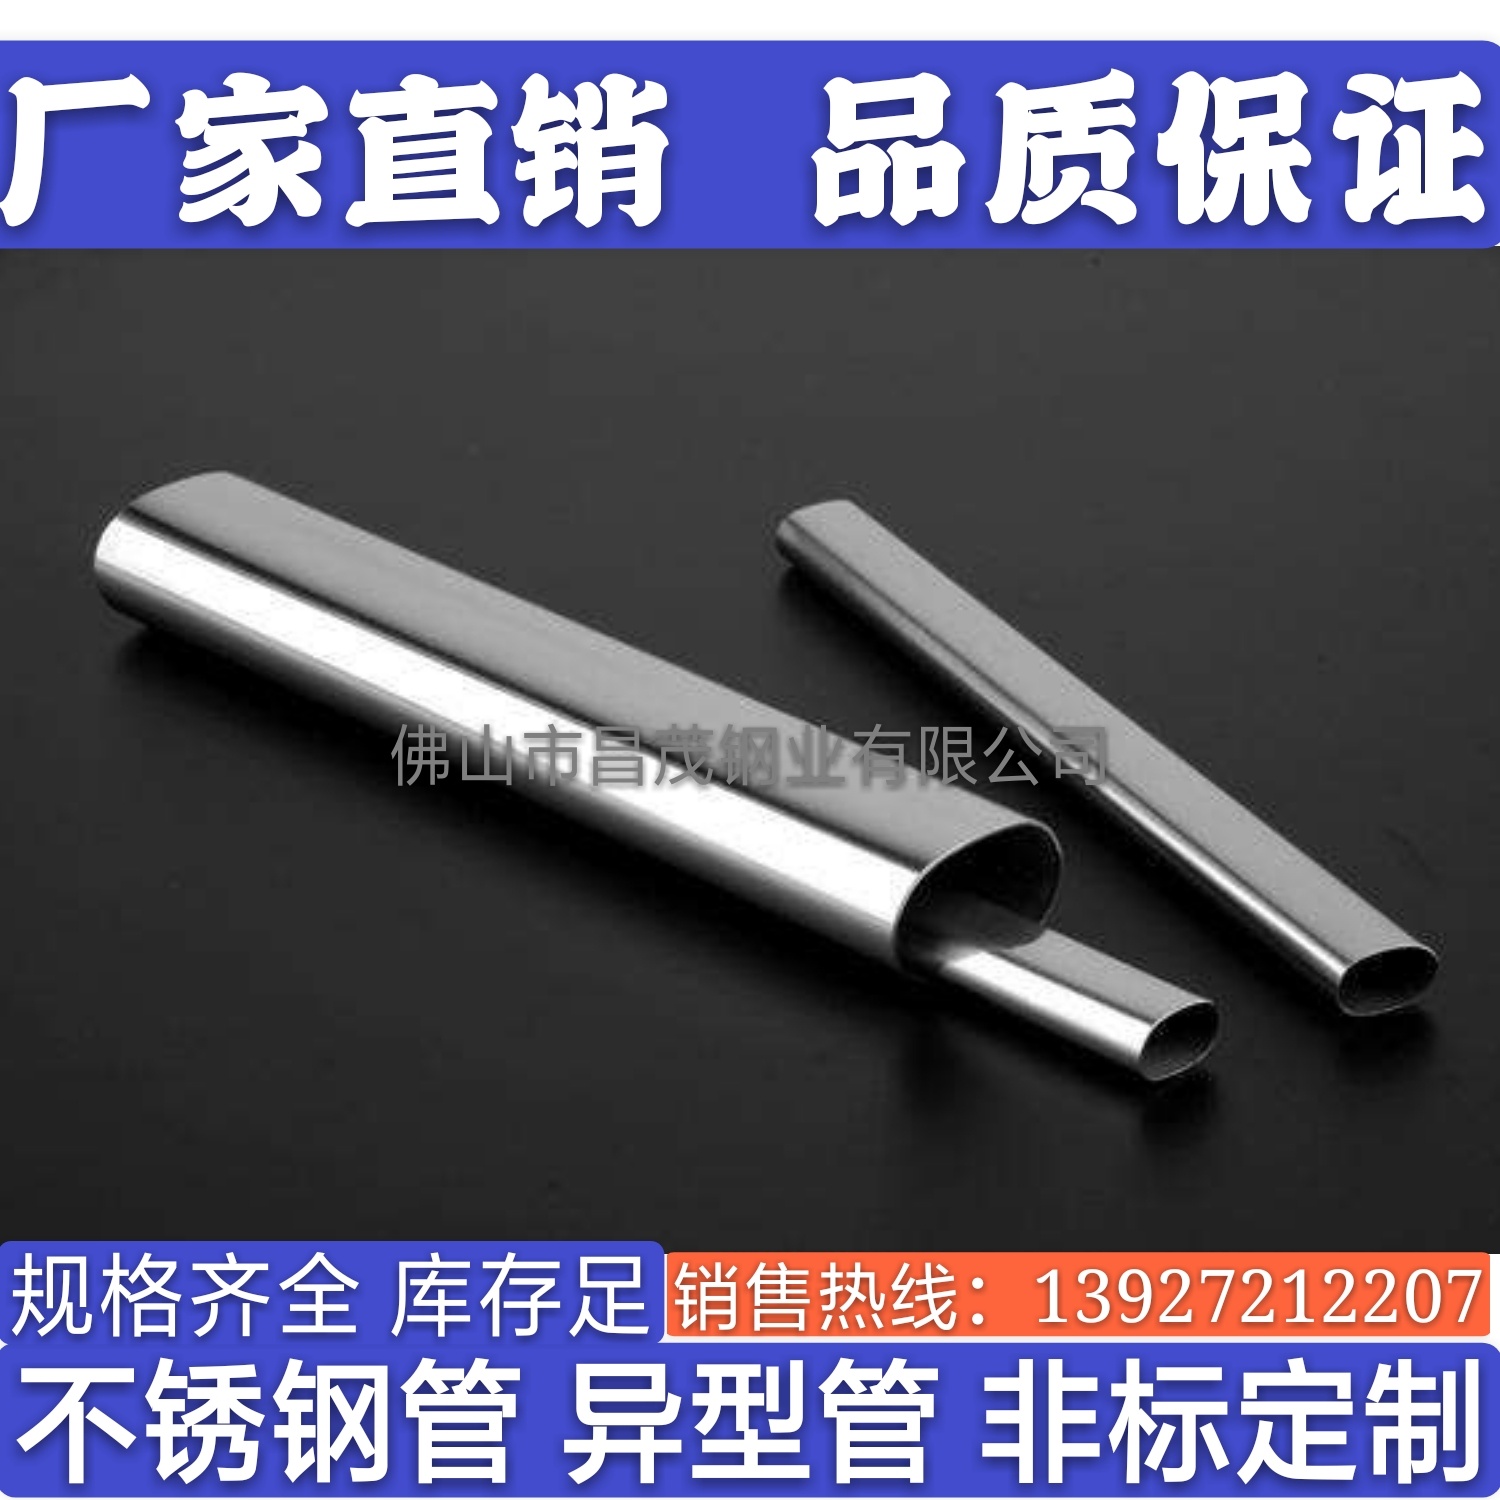 厂家直销不锈钢平椭圆管 不锈钢椭圆管 不锈钢平椭圆管规格